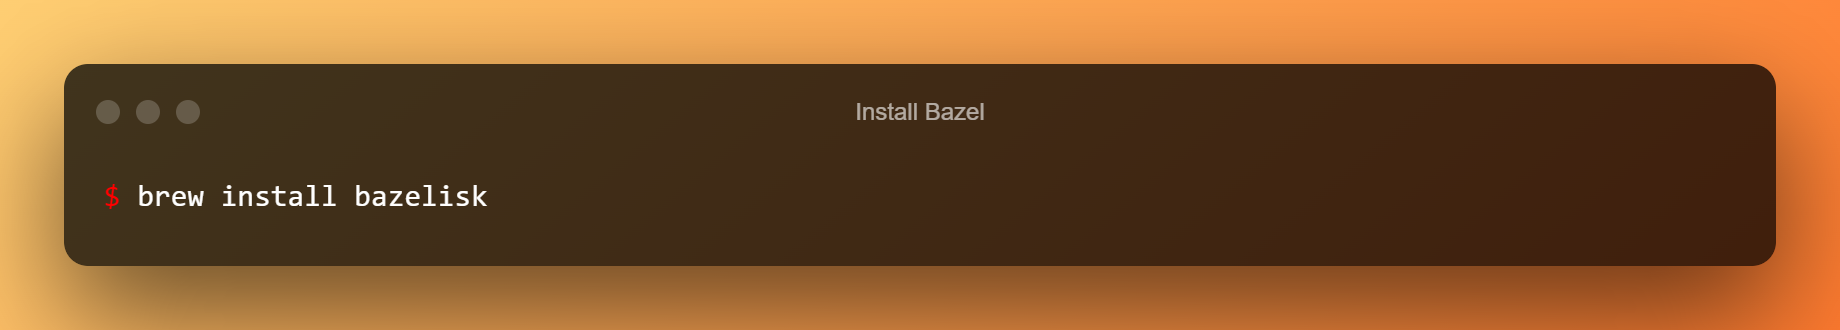 Install Bazel